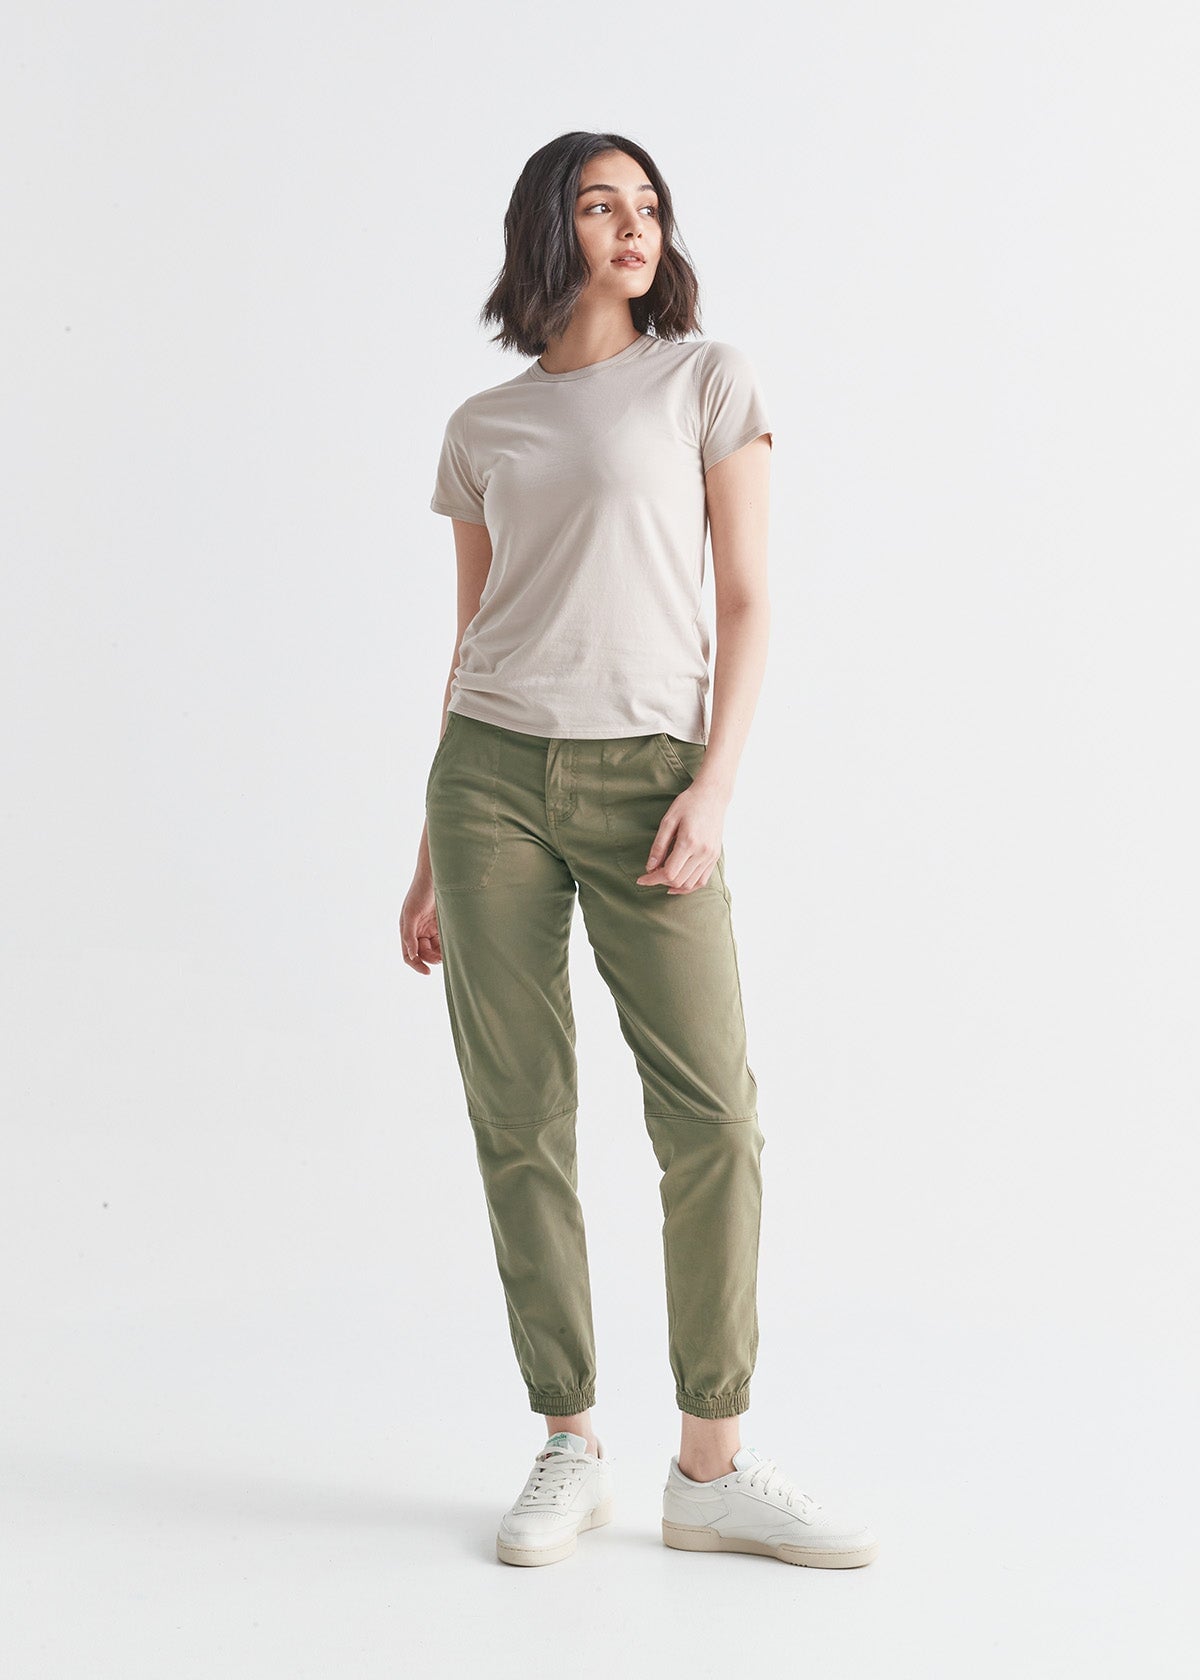 Grande Mode Solid Women Olive, Olive Track Pants - Buy Grande Mode